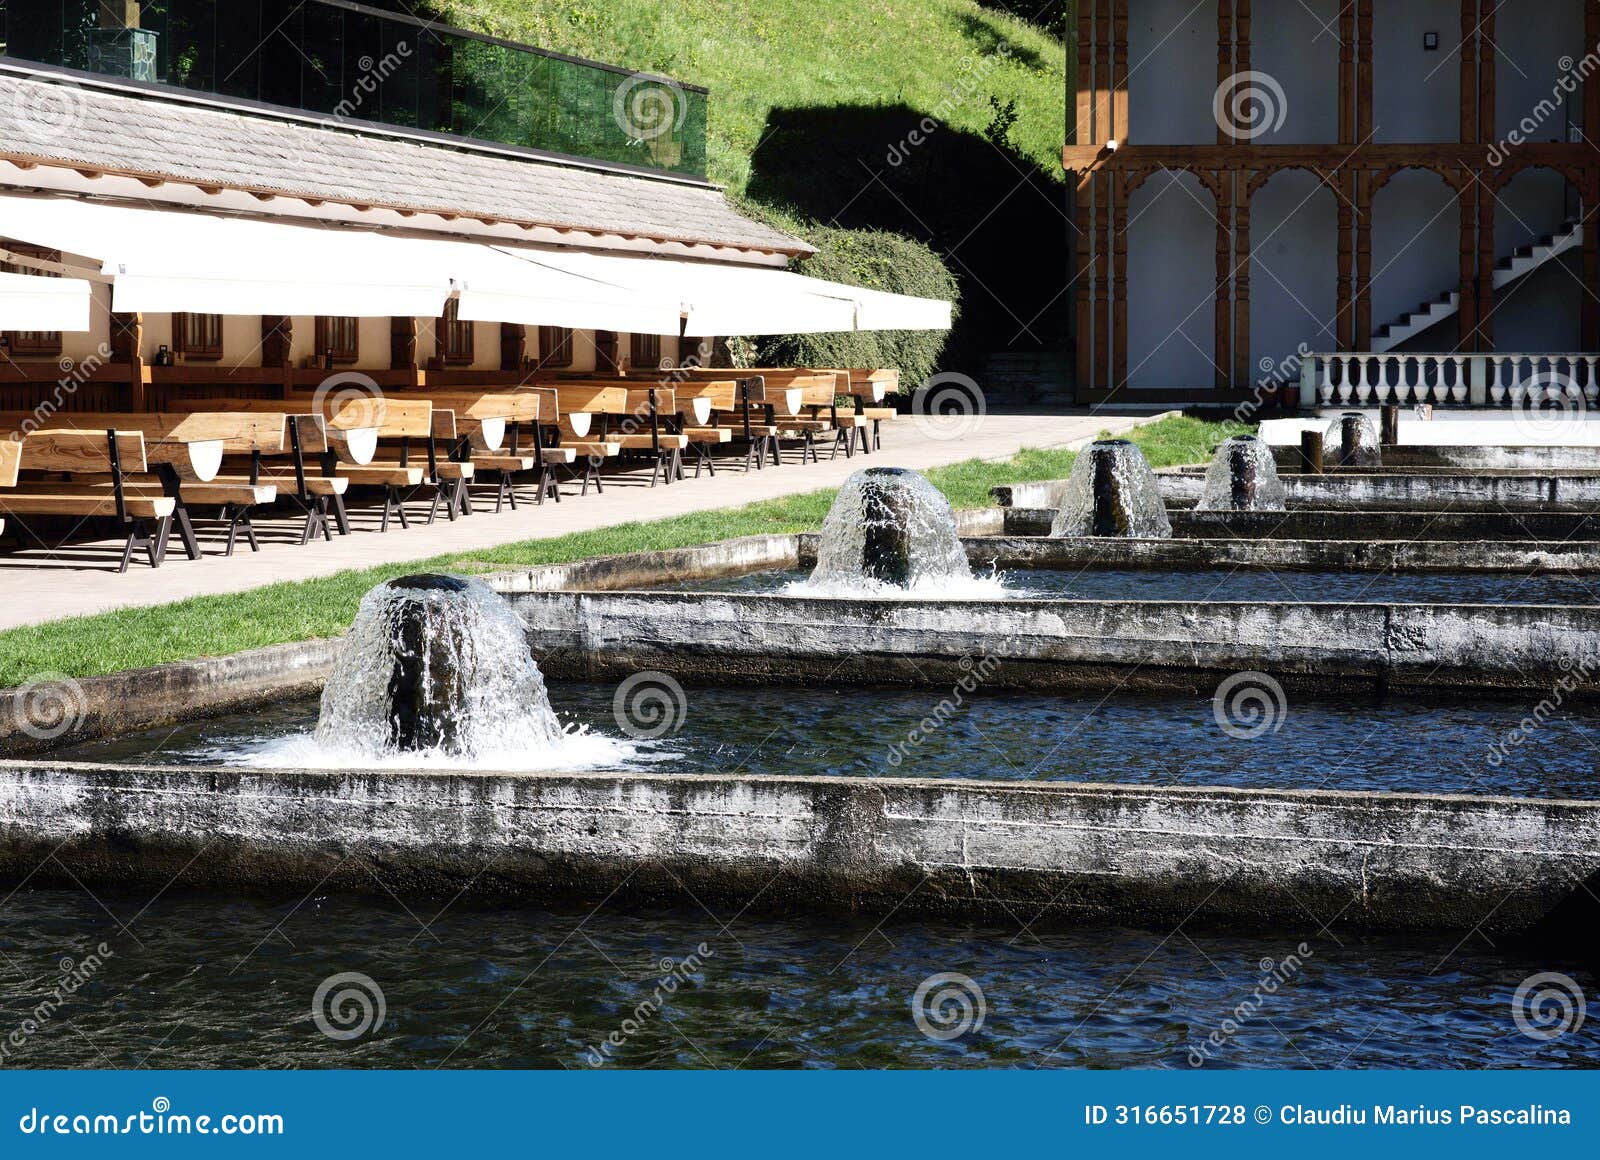 fish farming in concrete ponds in romania